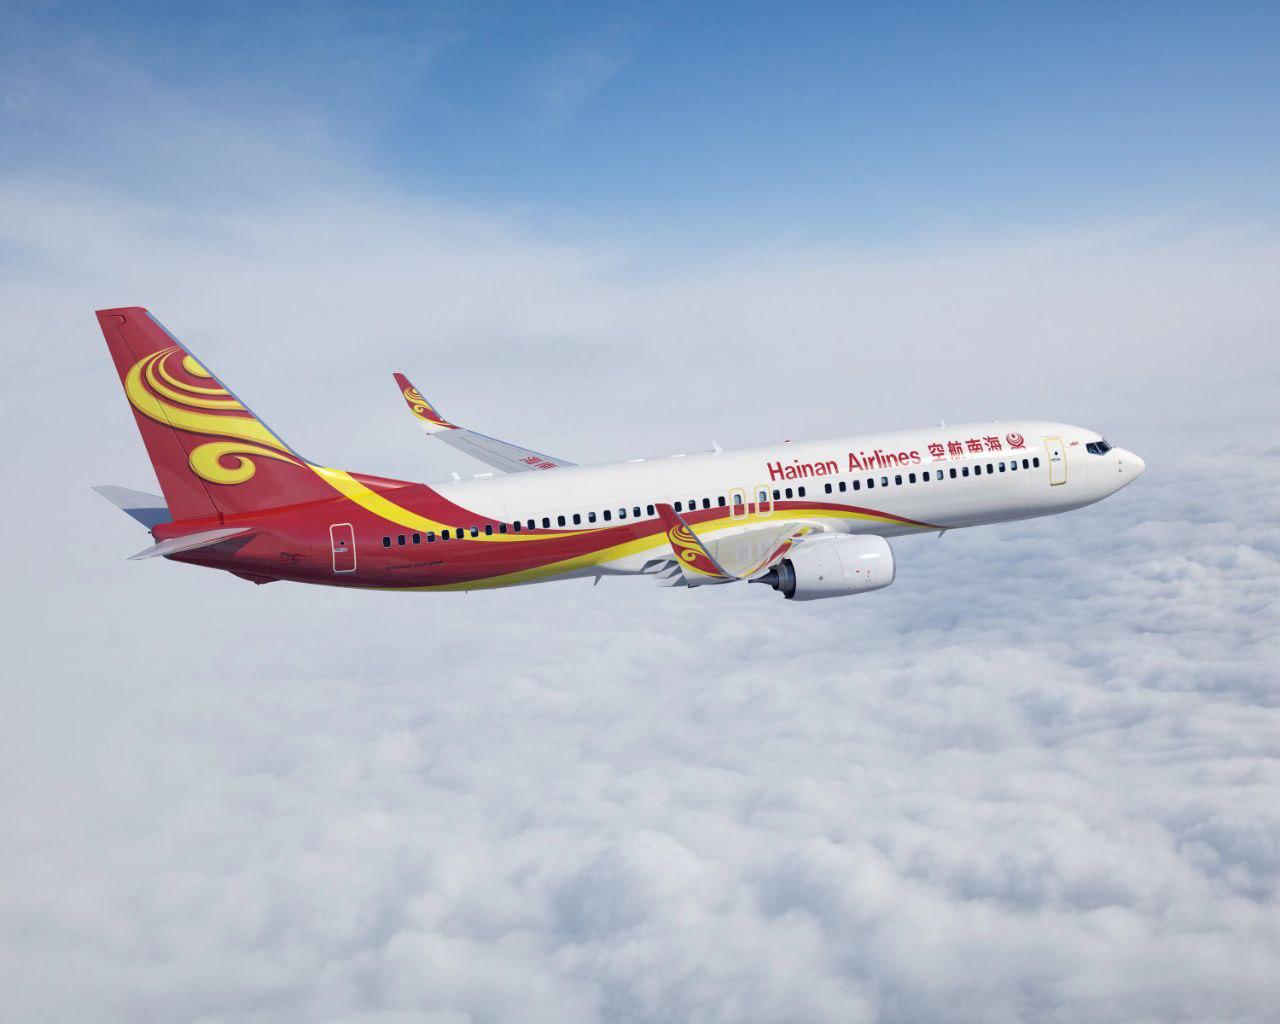 Авиагавань Приморья совместно с Hainan Airlines открывают прямые рейсы в Далянь